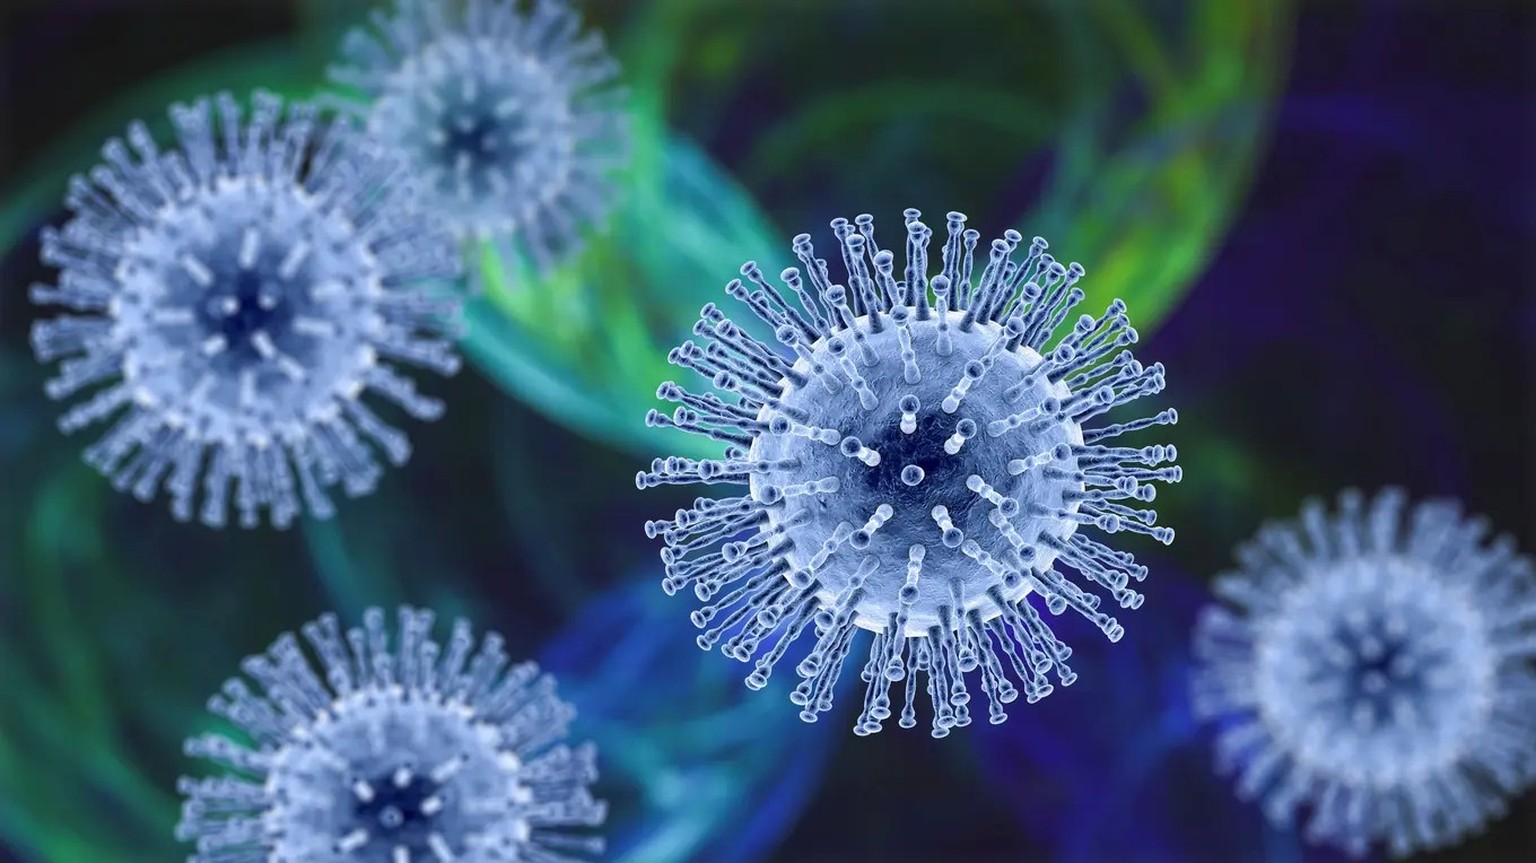 Coronaviren mutieren laufend, um der Immunität der Menschen ausweichen zu können.